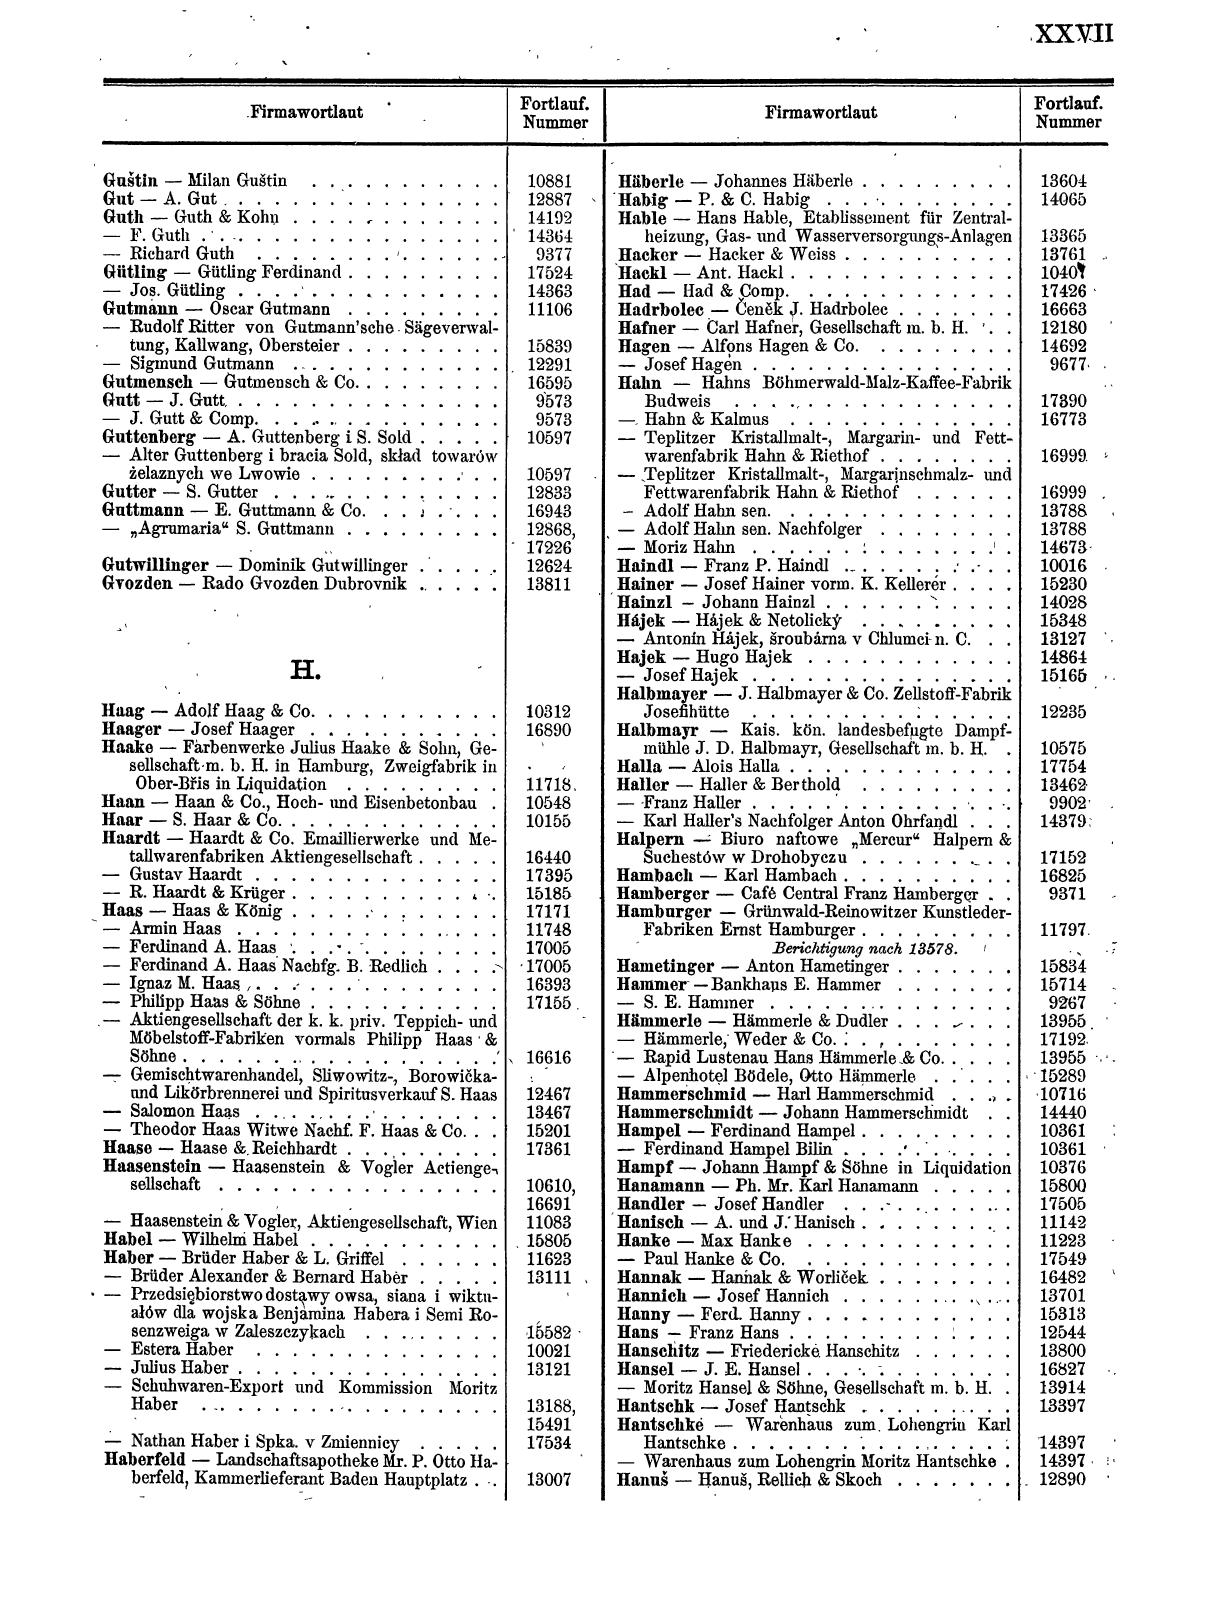 Zentralblatt für die Eintragungen in das Handelsregister 1913, Teil 2 - Seite 31